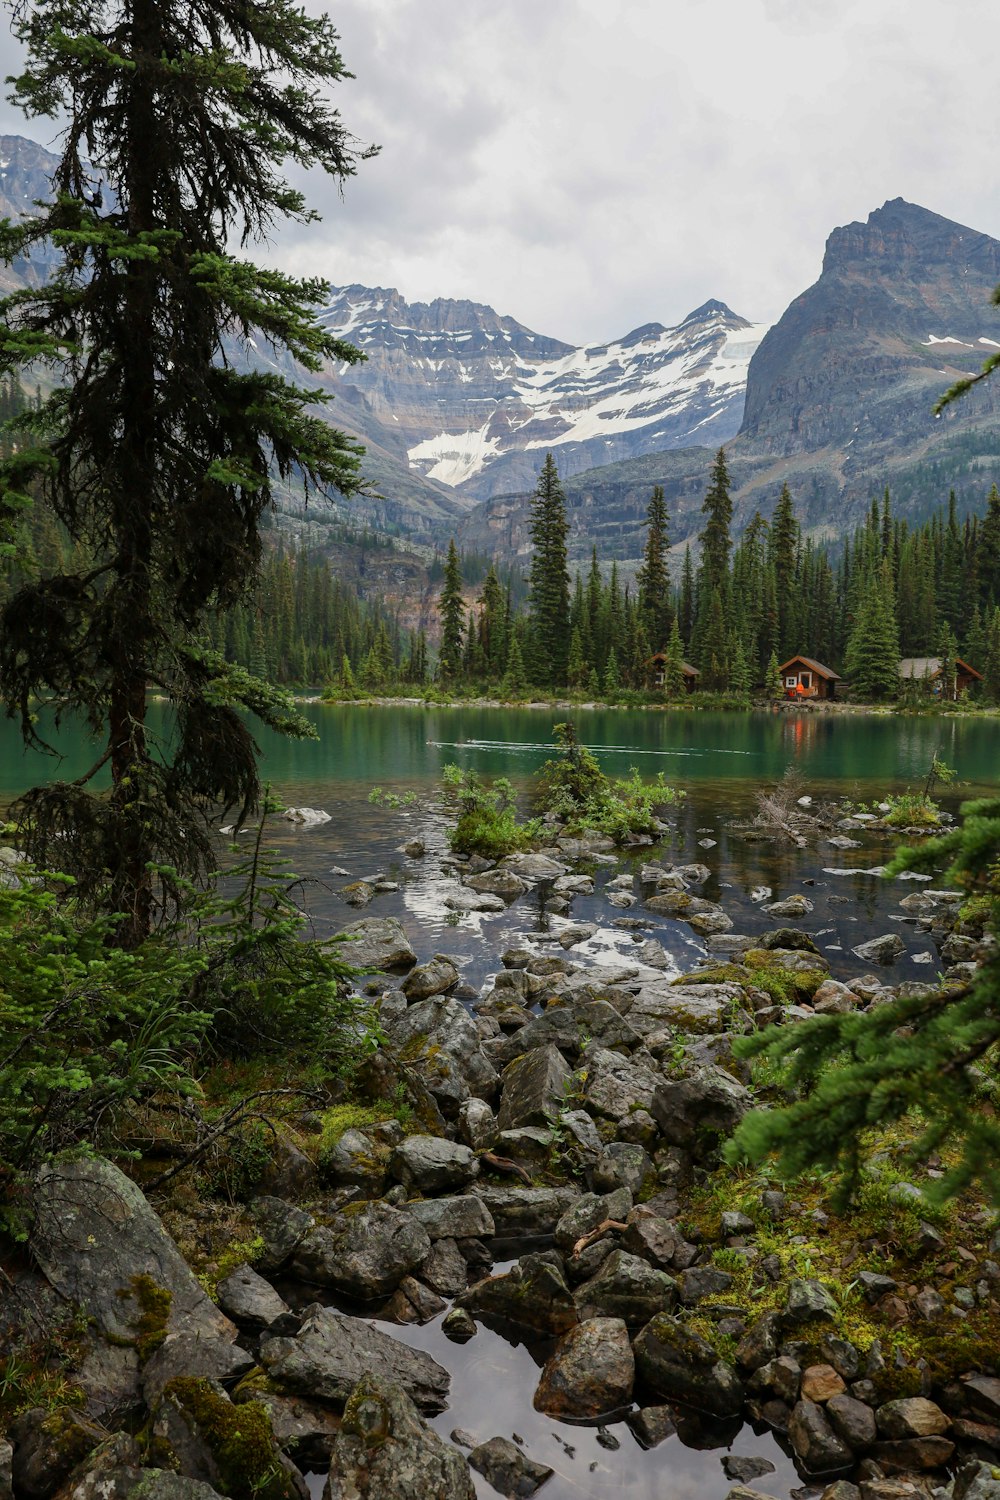 Un lago rodeado de árboles y montañas